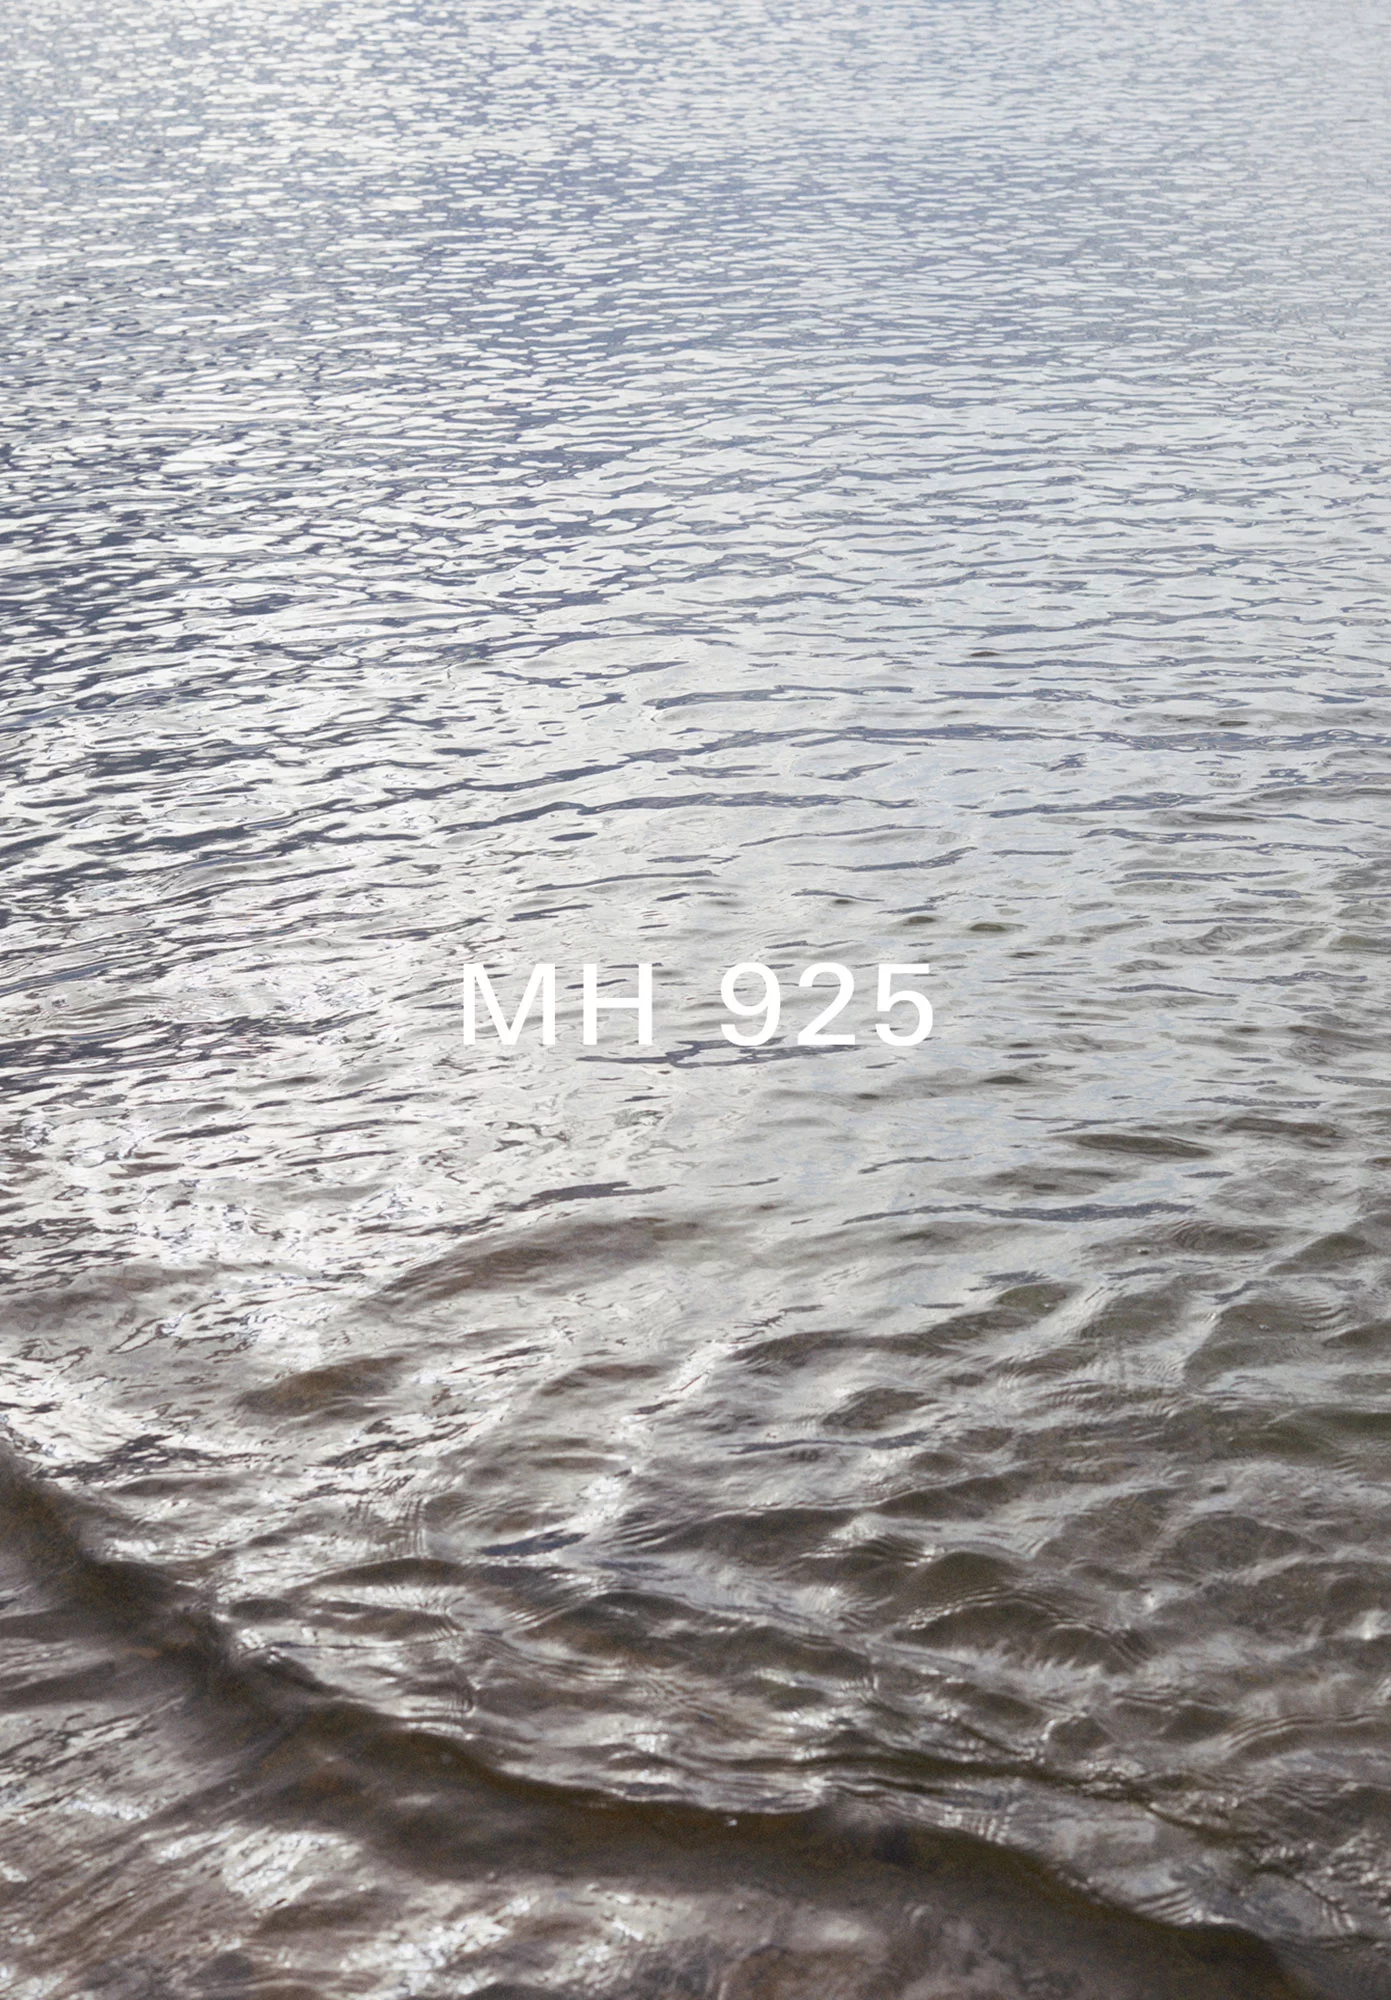 MH 925 8 by Rickard SUND